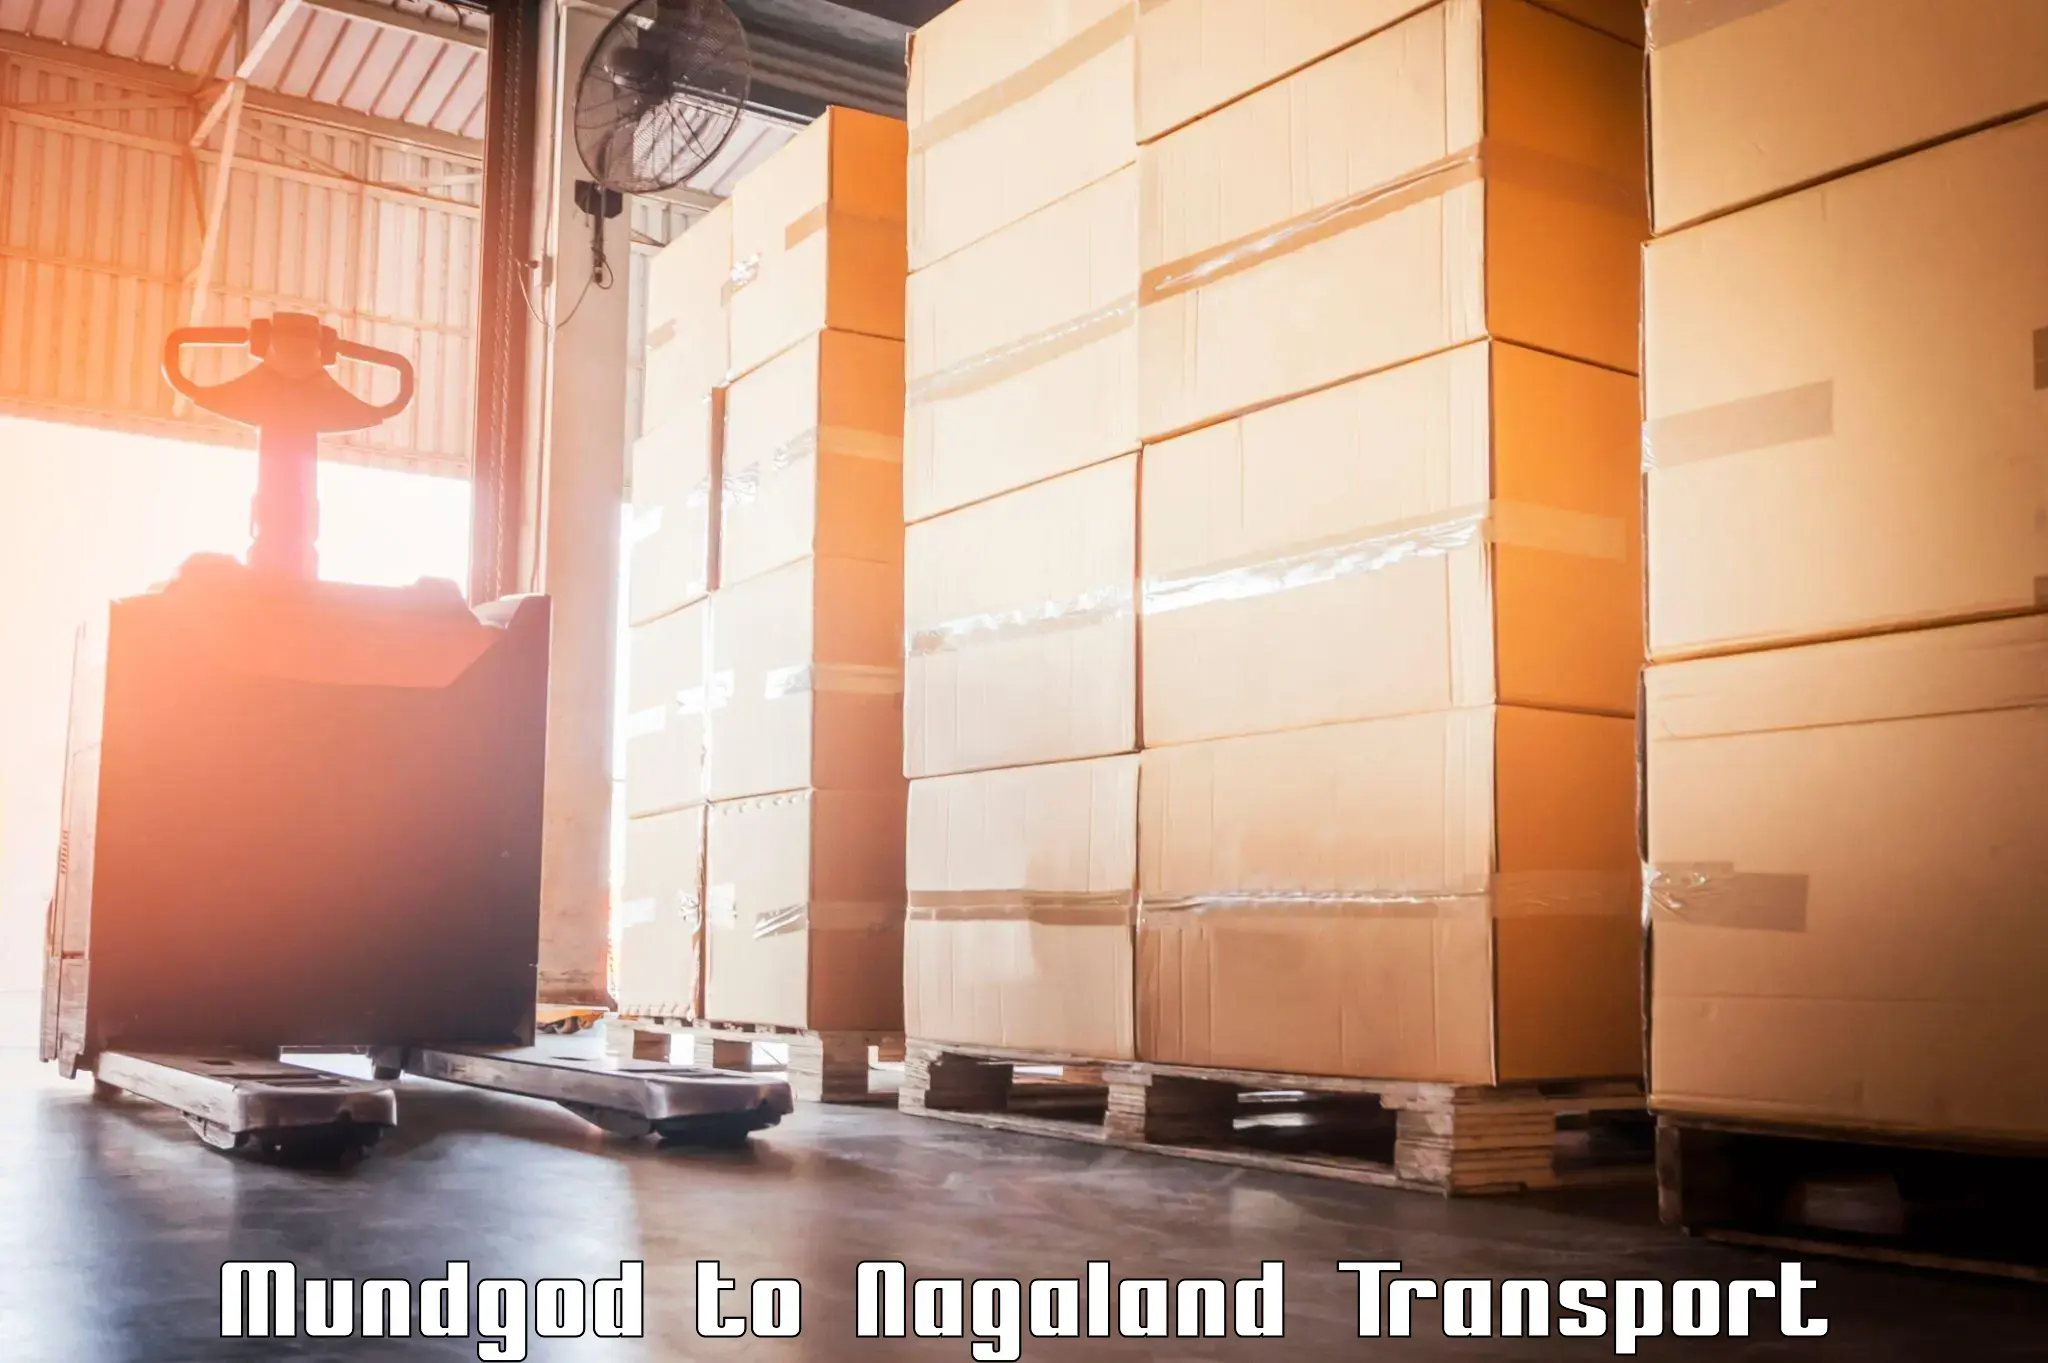 Parcel transport services Mundgod to Nagaland